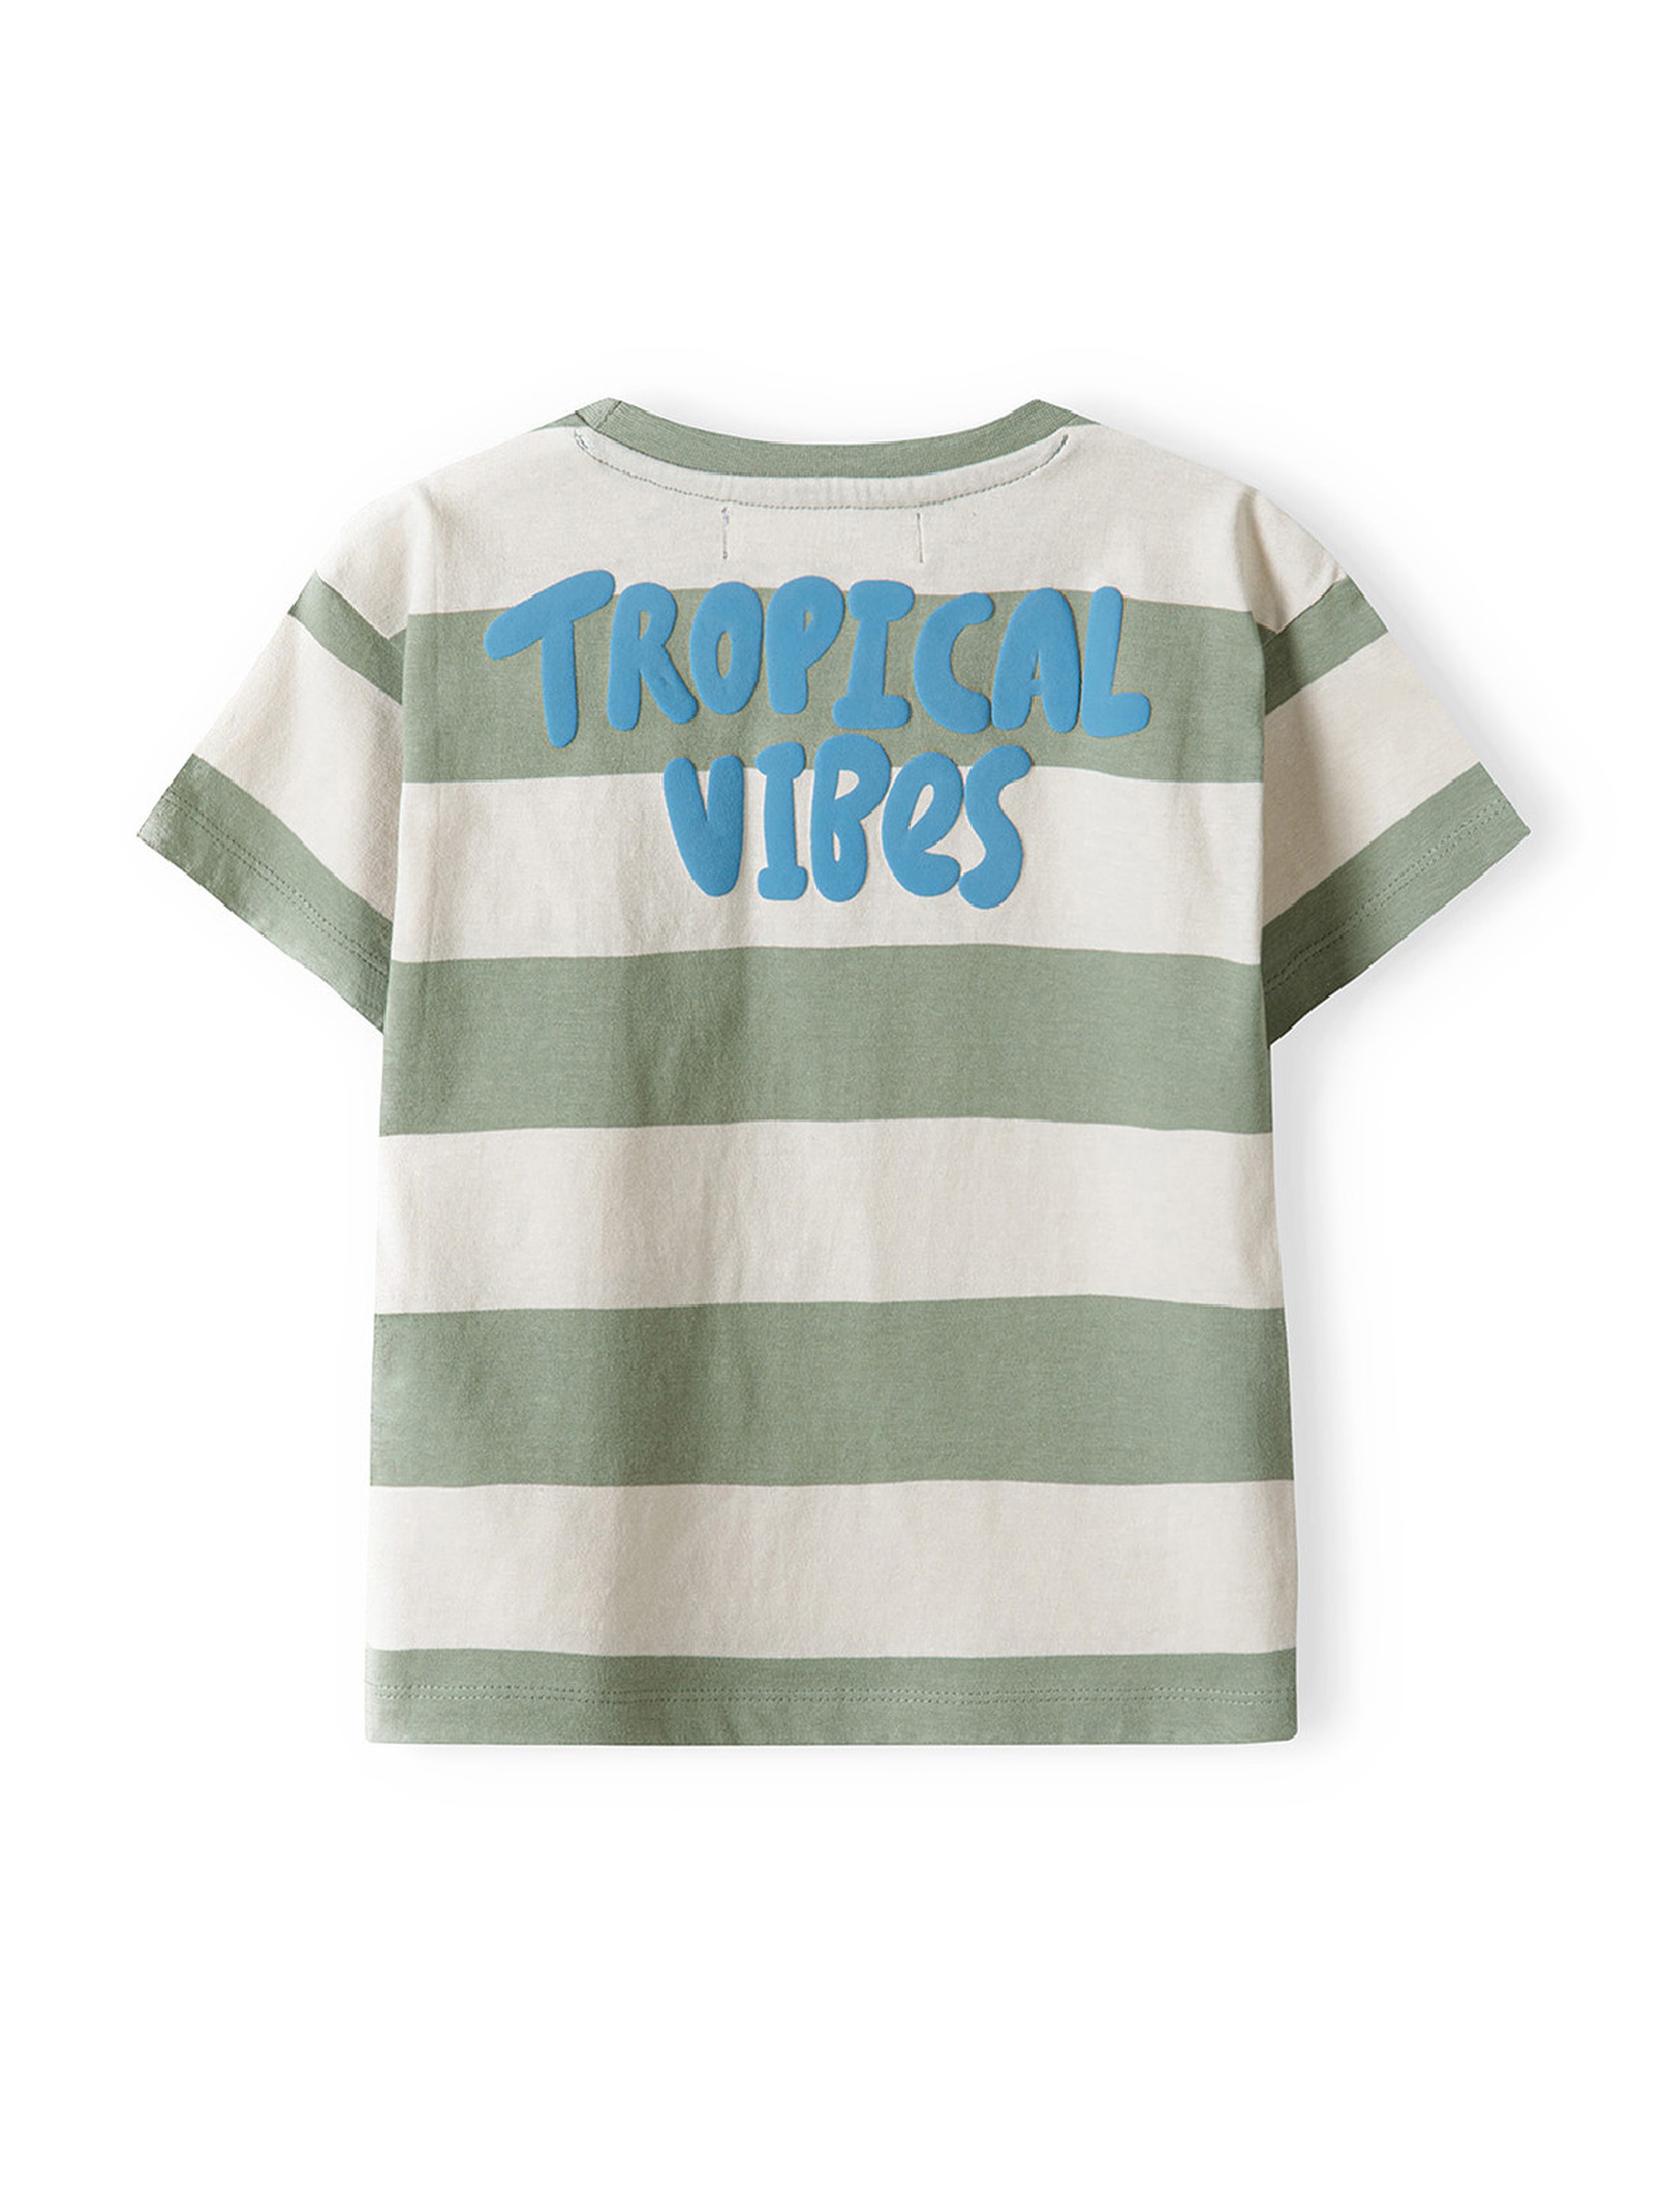 Bawełniany t-shirt dla niemowlaka w paski